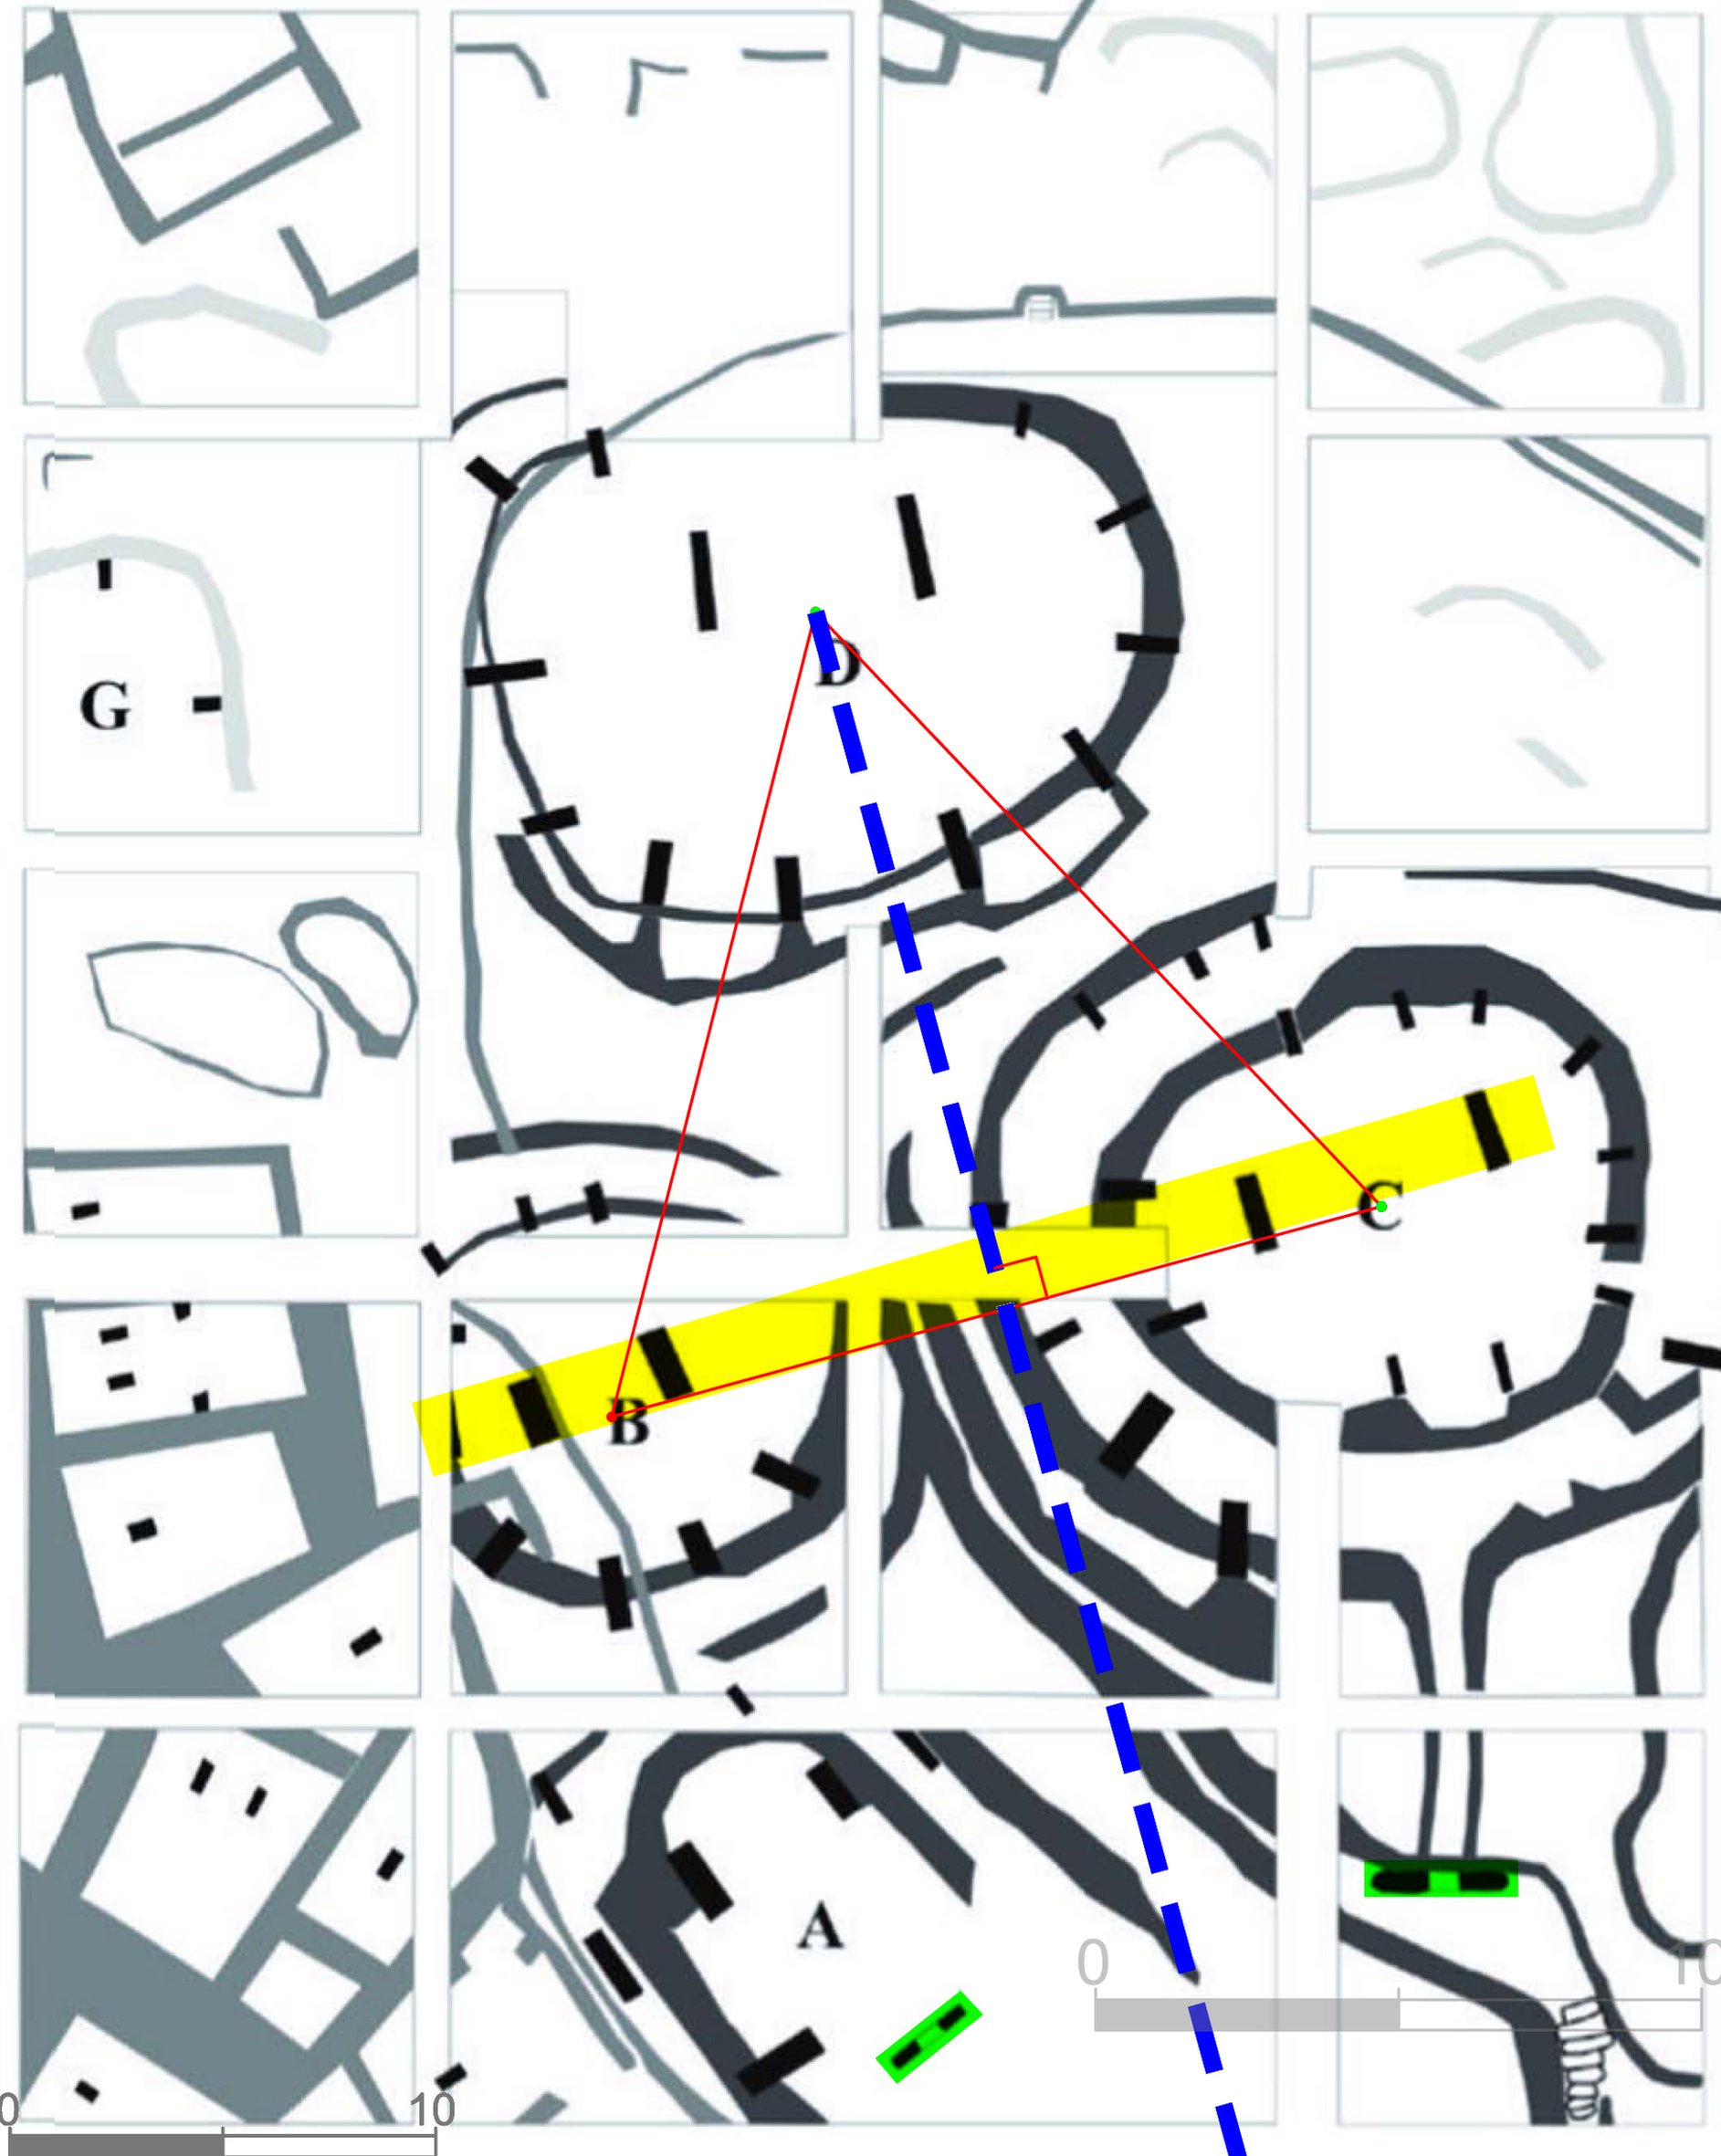 Patrón geométrico subrayando la planificación arquitectónica de un complejo en Göbekli Tepe. Un diagrama superpuesto sobre el plan esquemático.